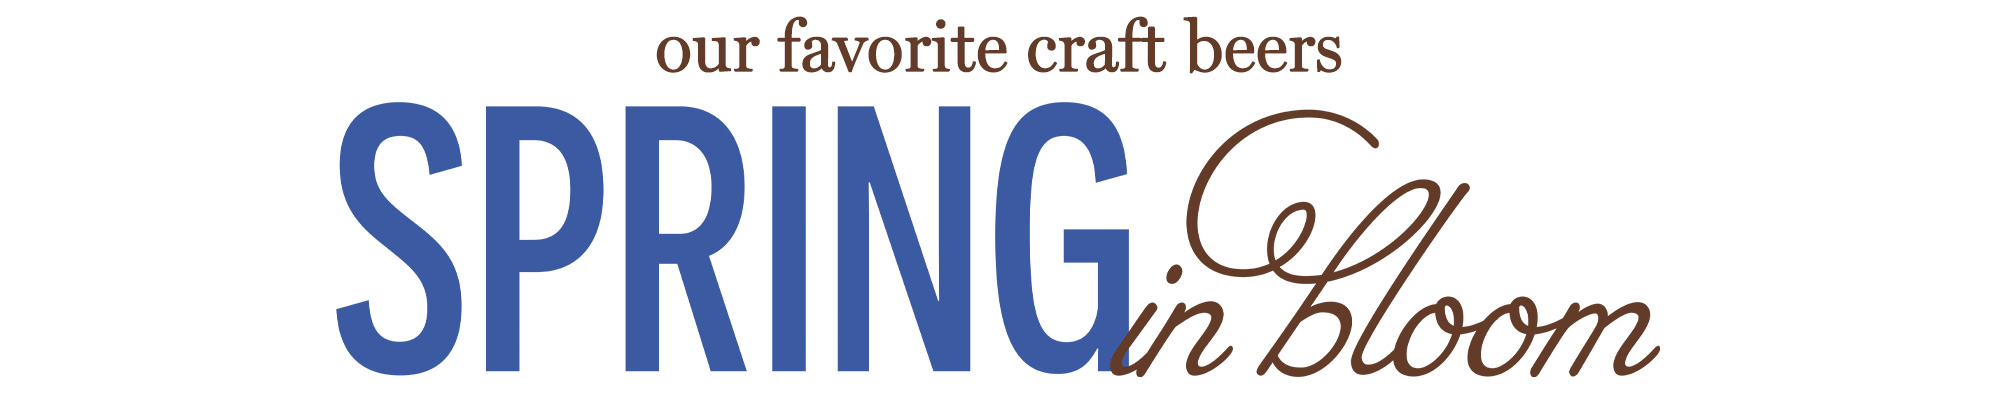 our favorite craft beers - Spring in bloom